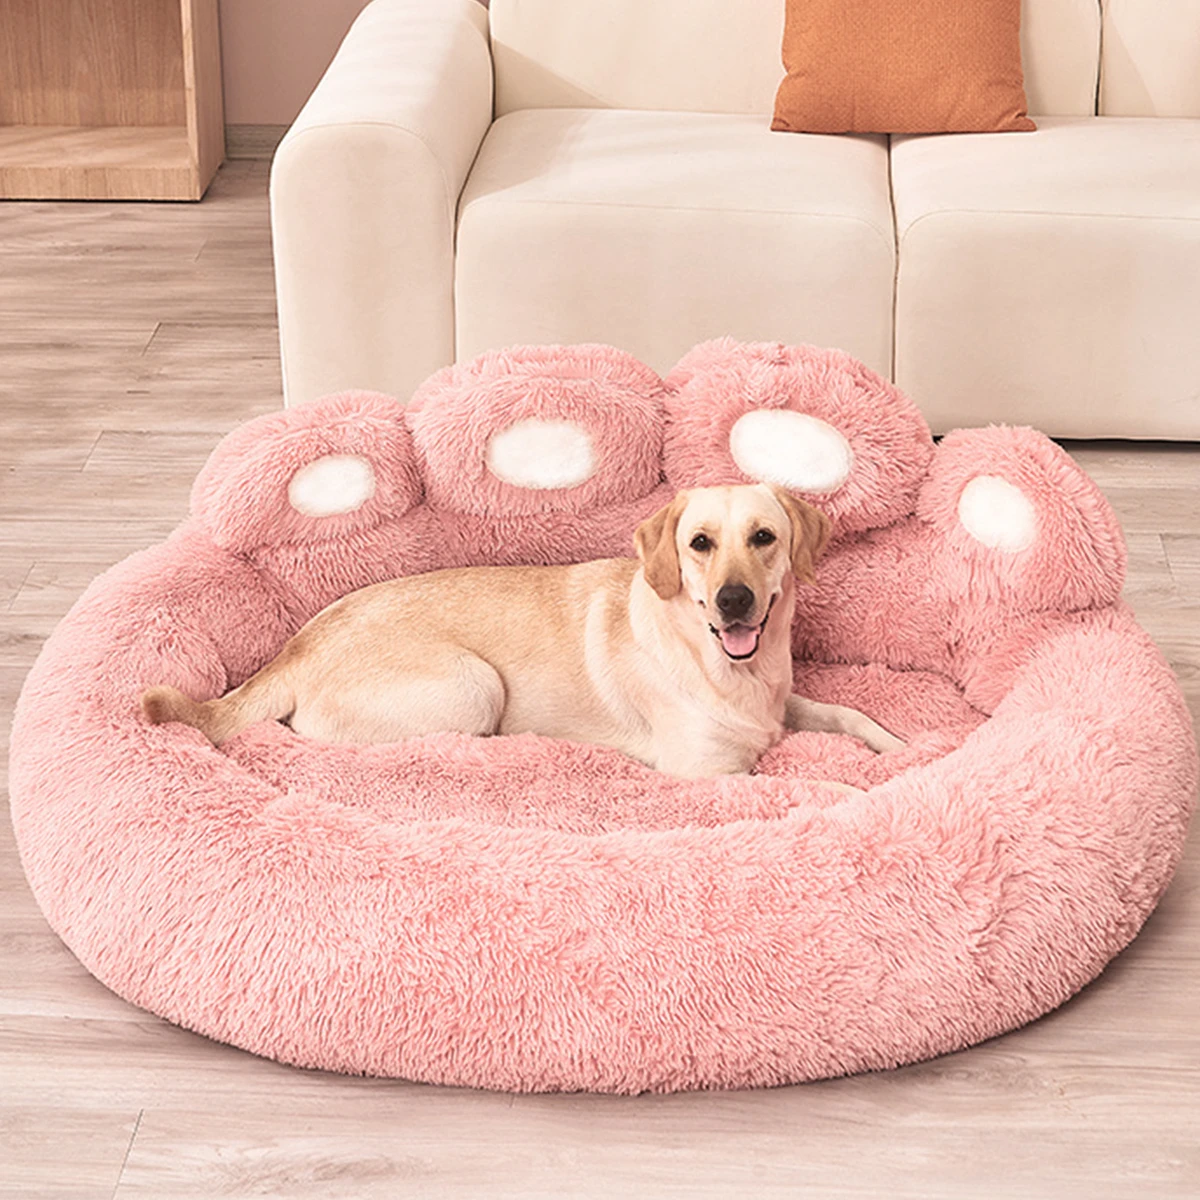 Lits-canap-s-pour-chiens-de-petite-taille-accessoires-chauds-tapis-de-lit-pour-grands-chiens-2